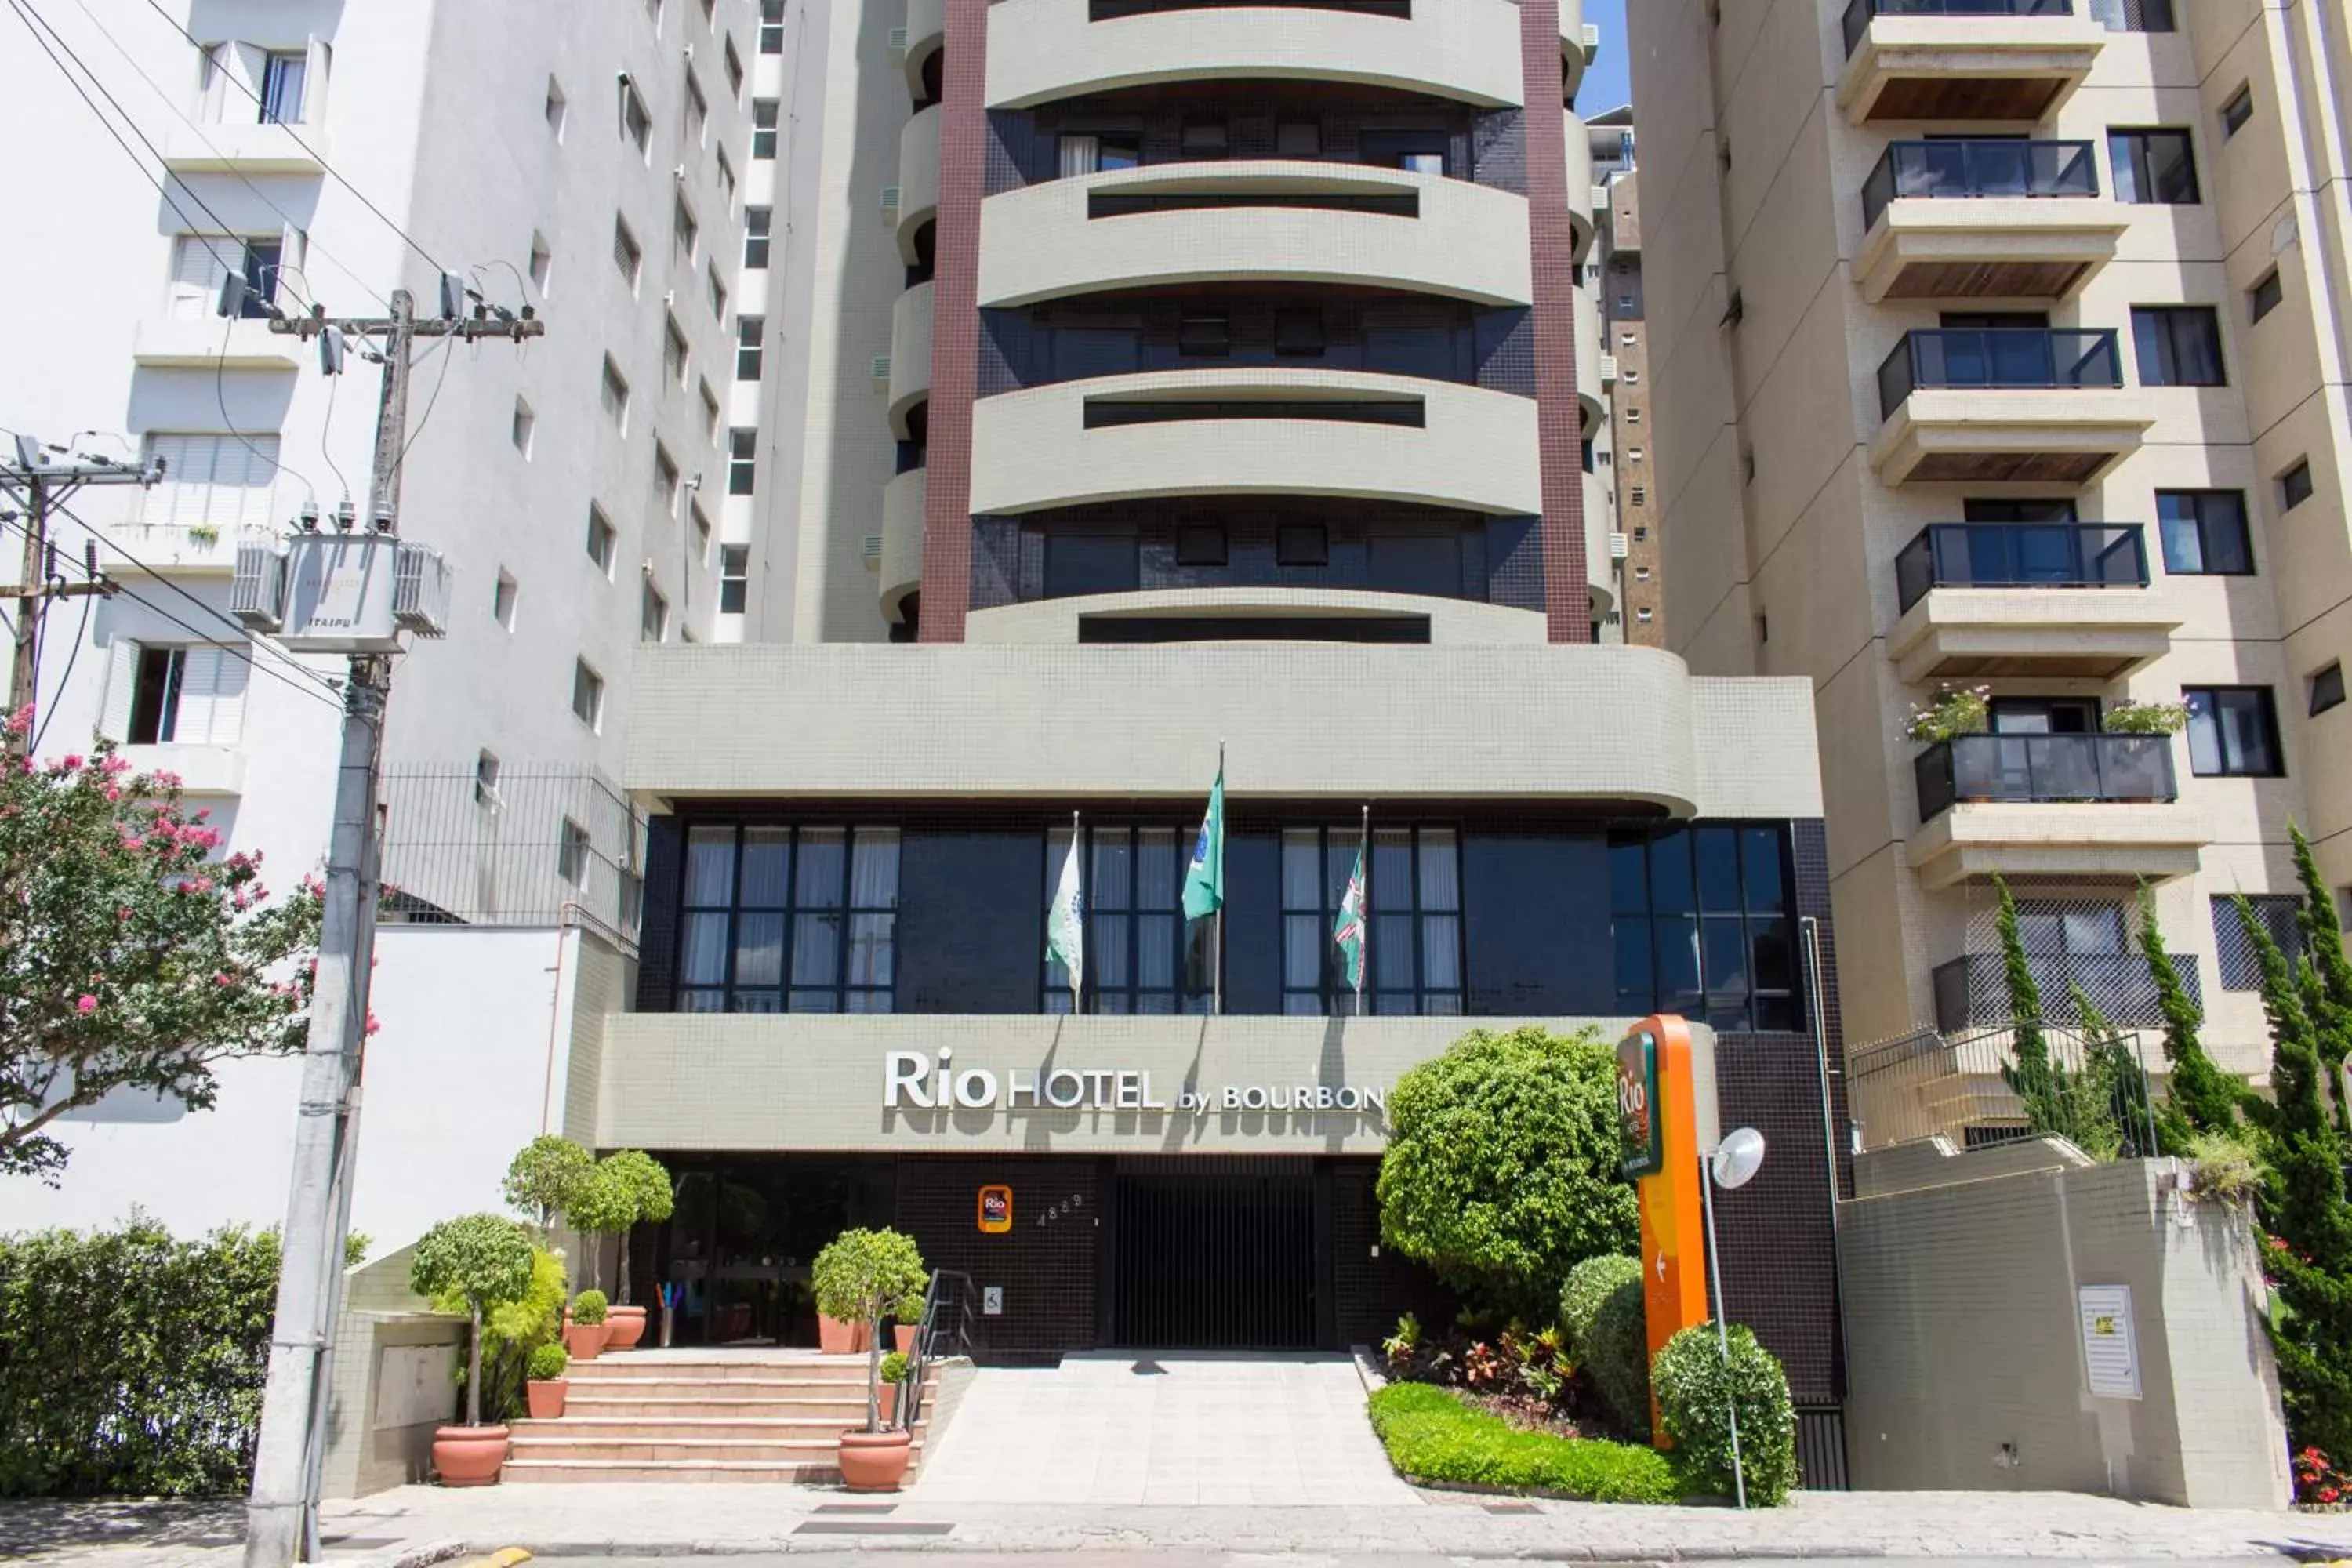 Facade/entrance, Property Building in Rio Hotel by Bourbon Curitiba Batel